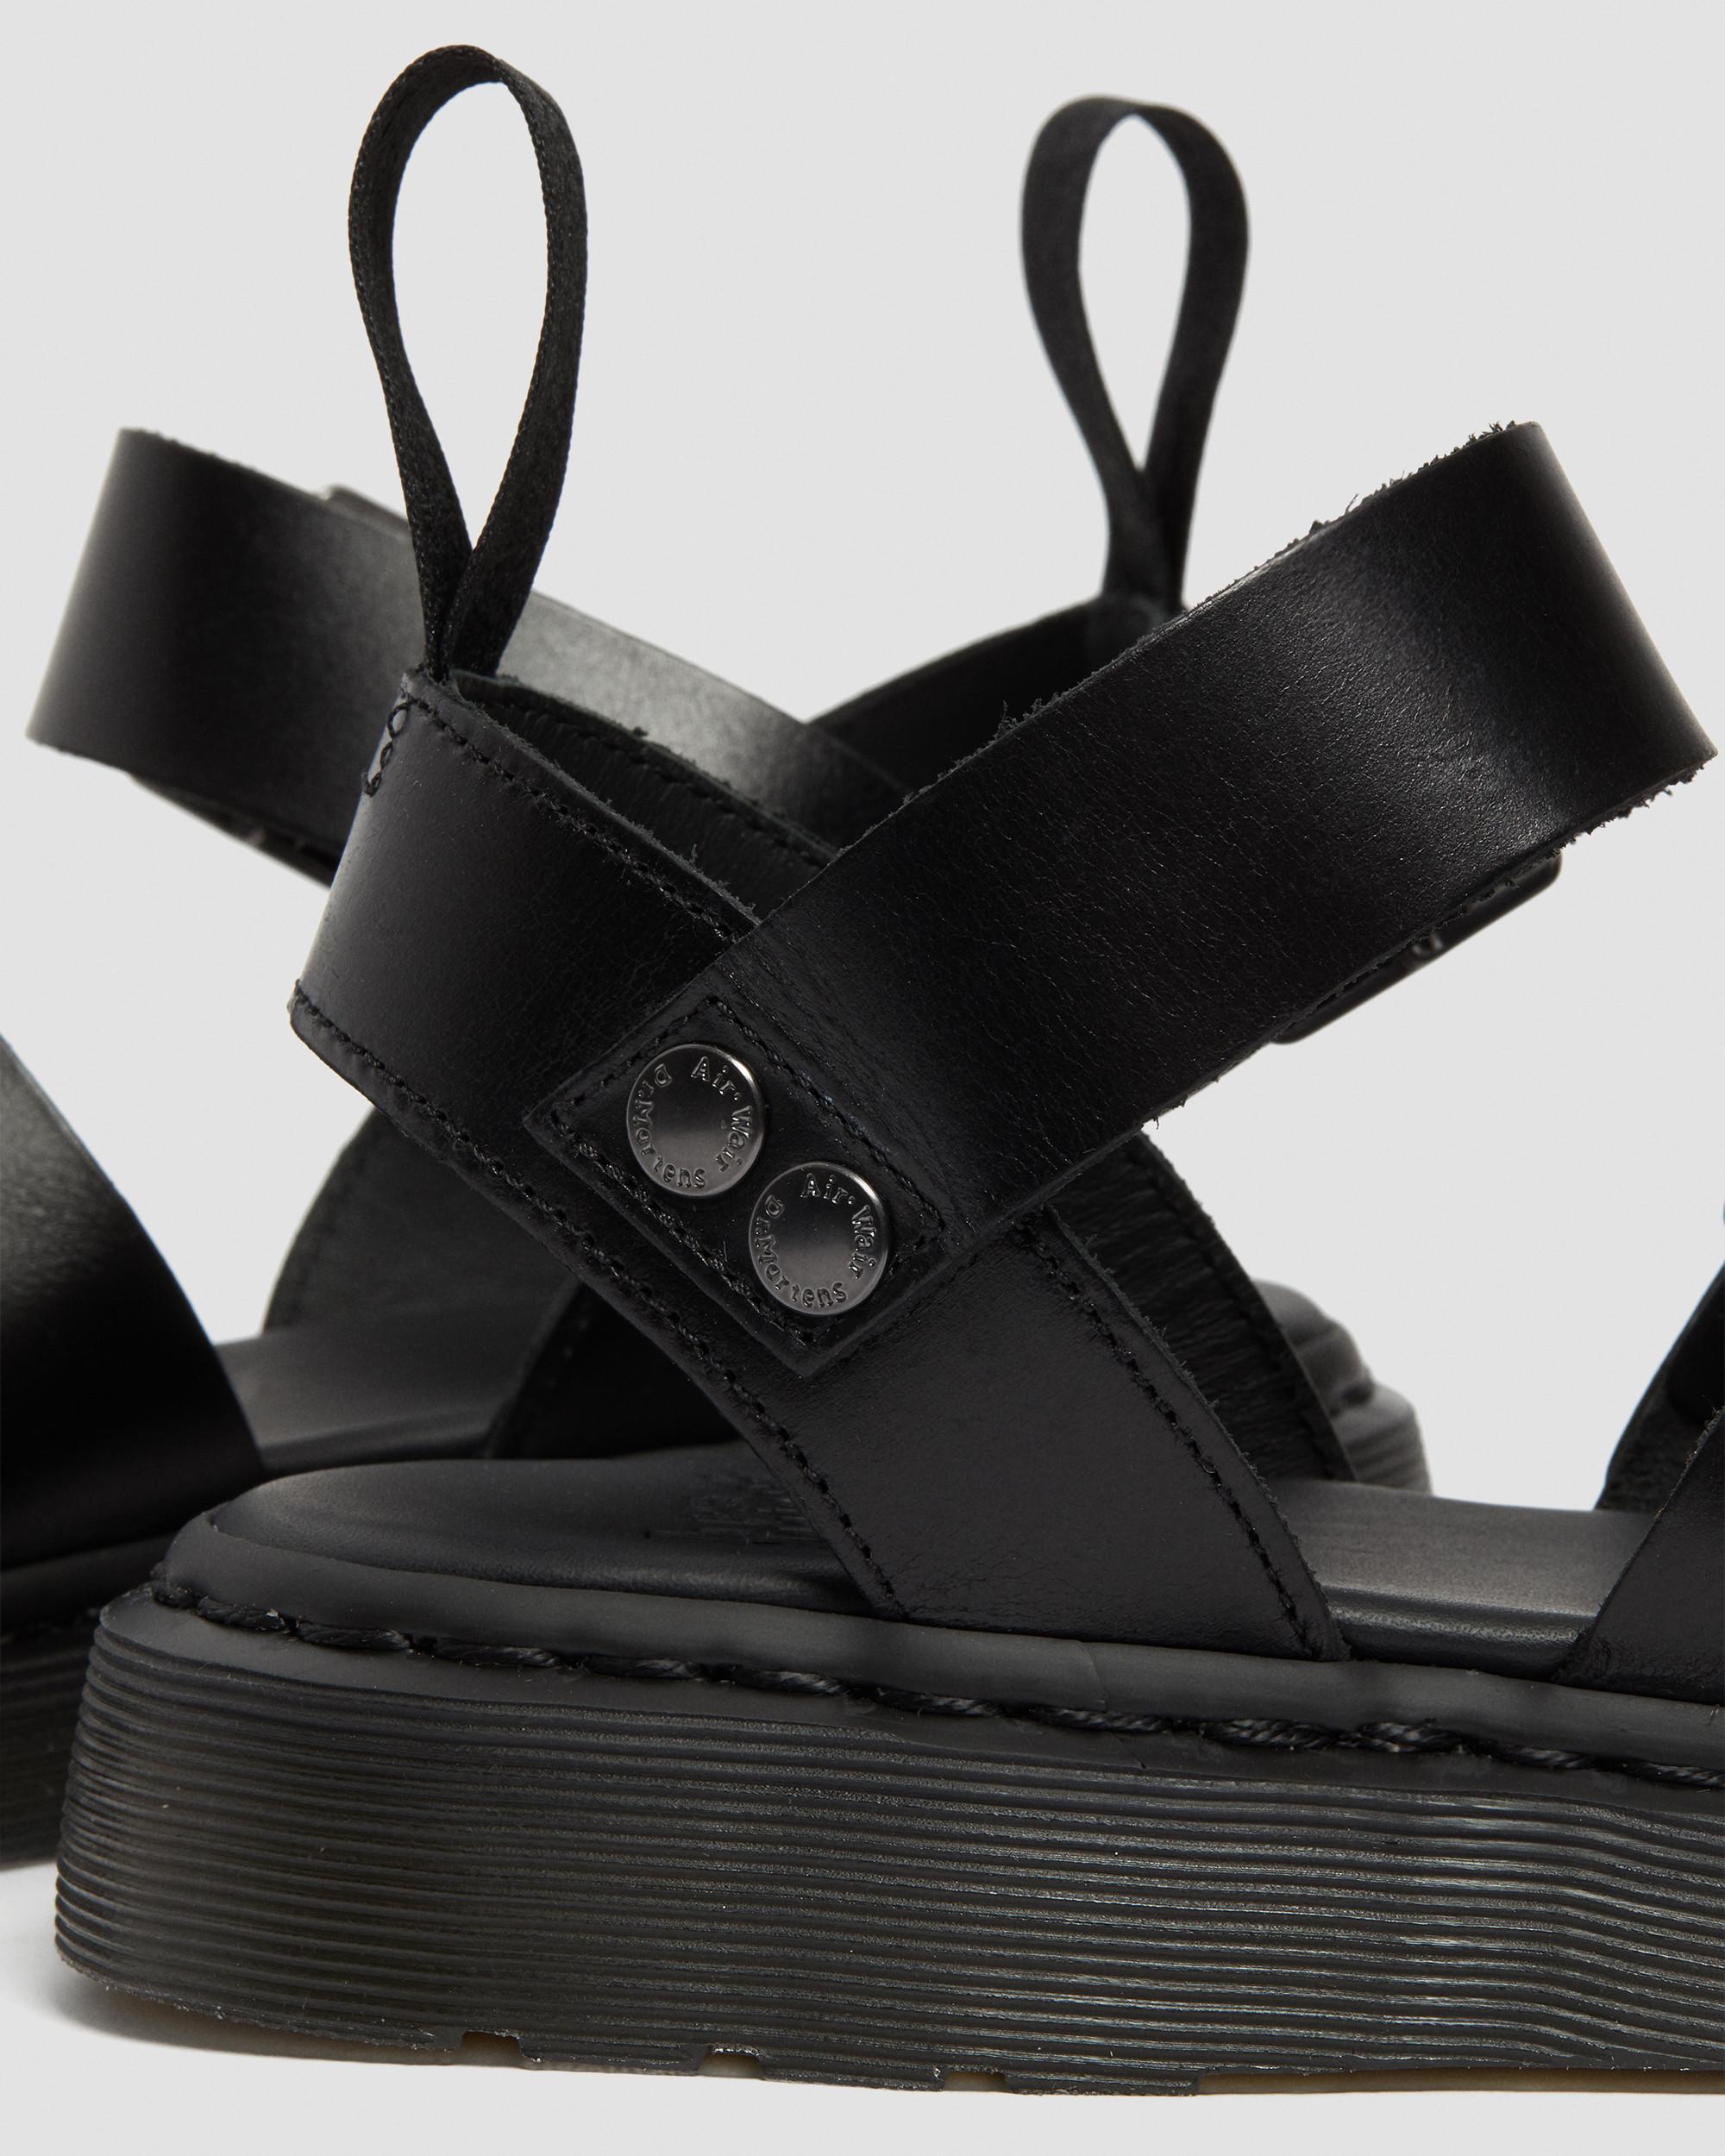 Gryphon Brando Leather Gladiator Sandals | Dr. Martens